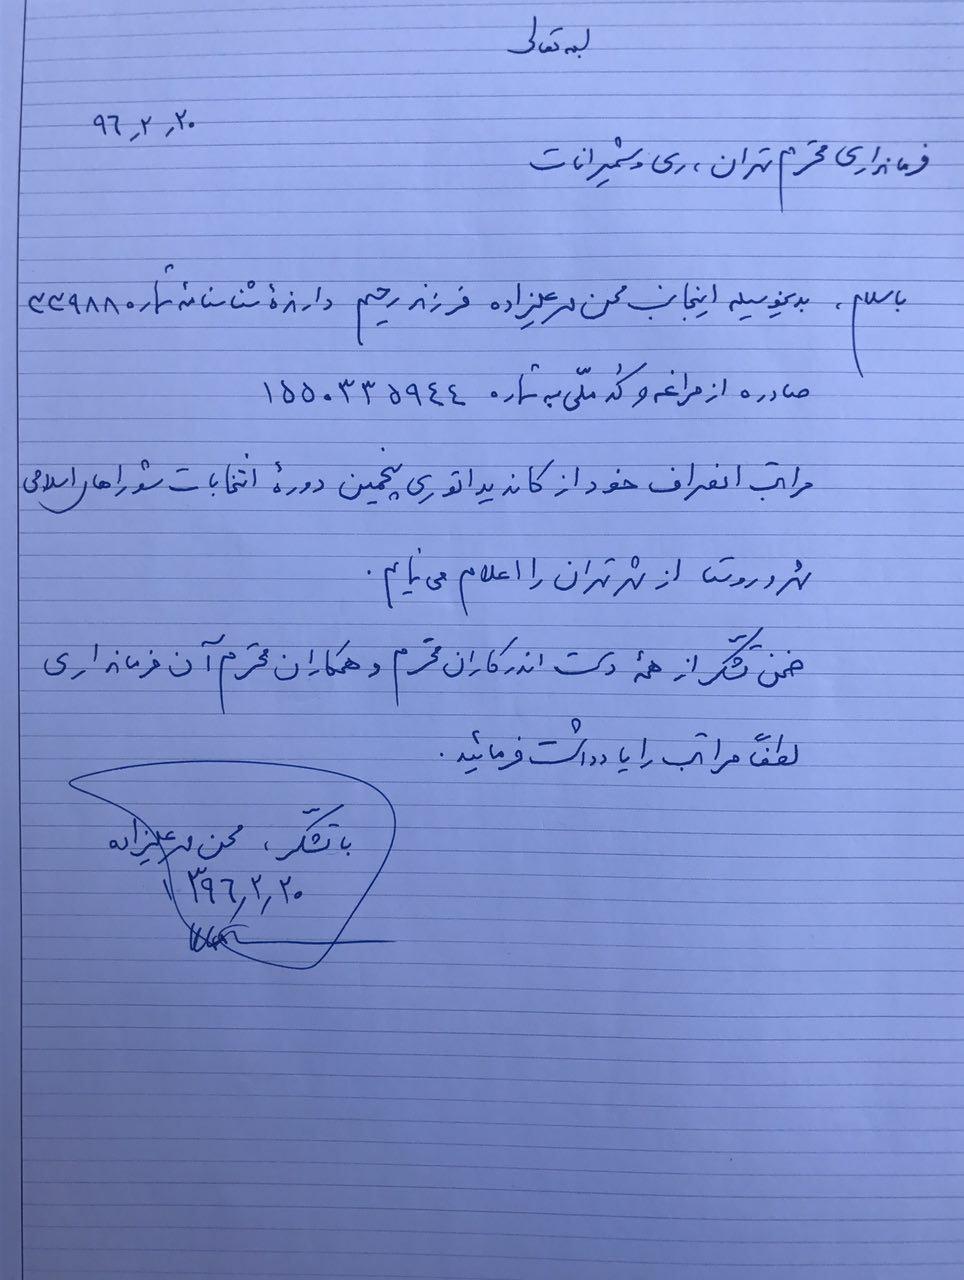 محسن مهرعلیزاده از حضور در انتخابات شورای شهر انصراف داد+متن نامه